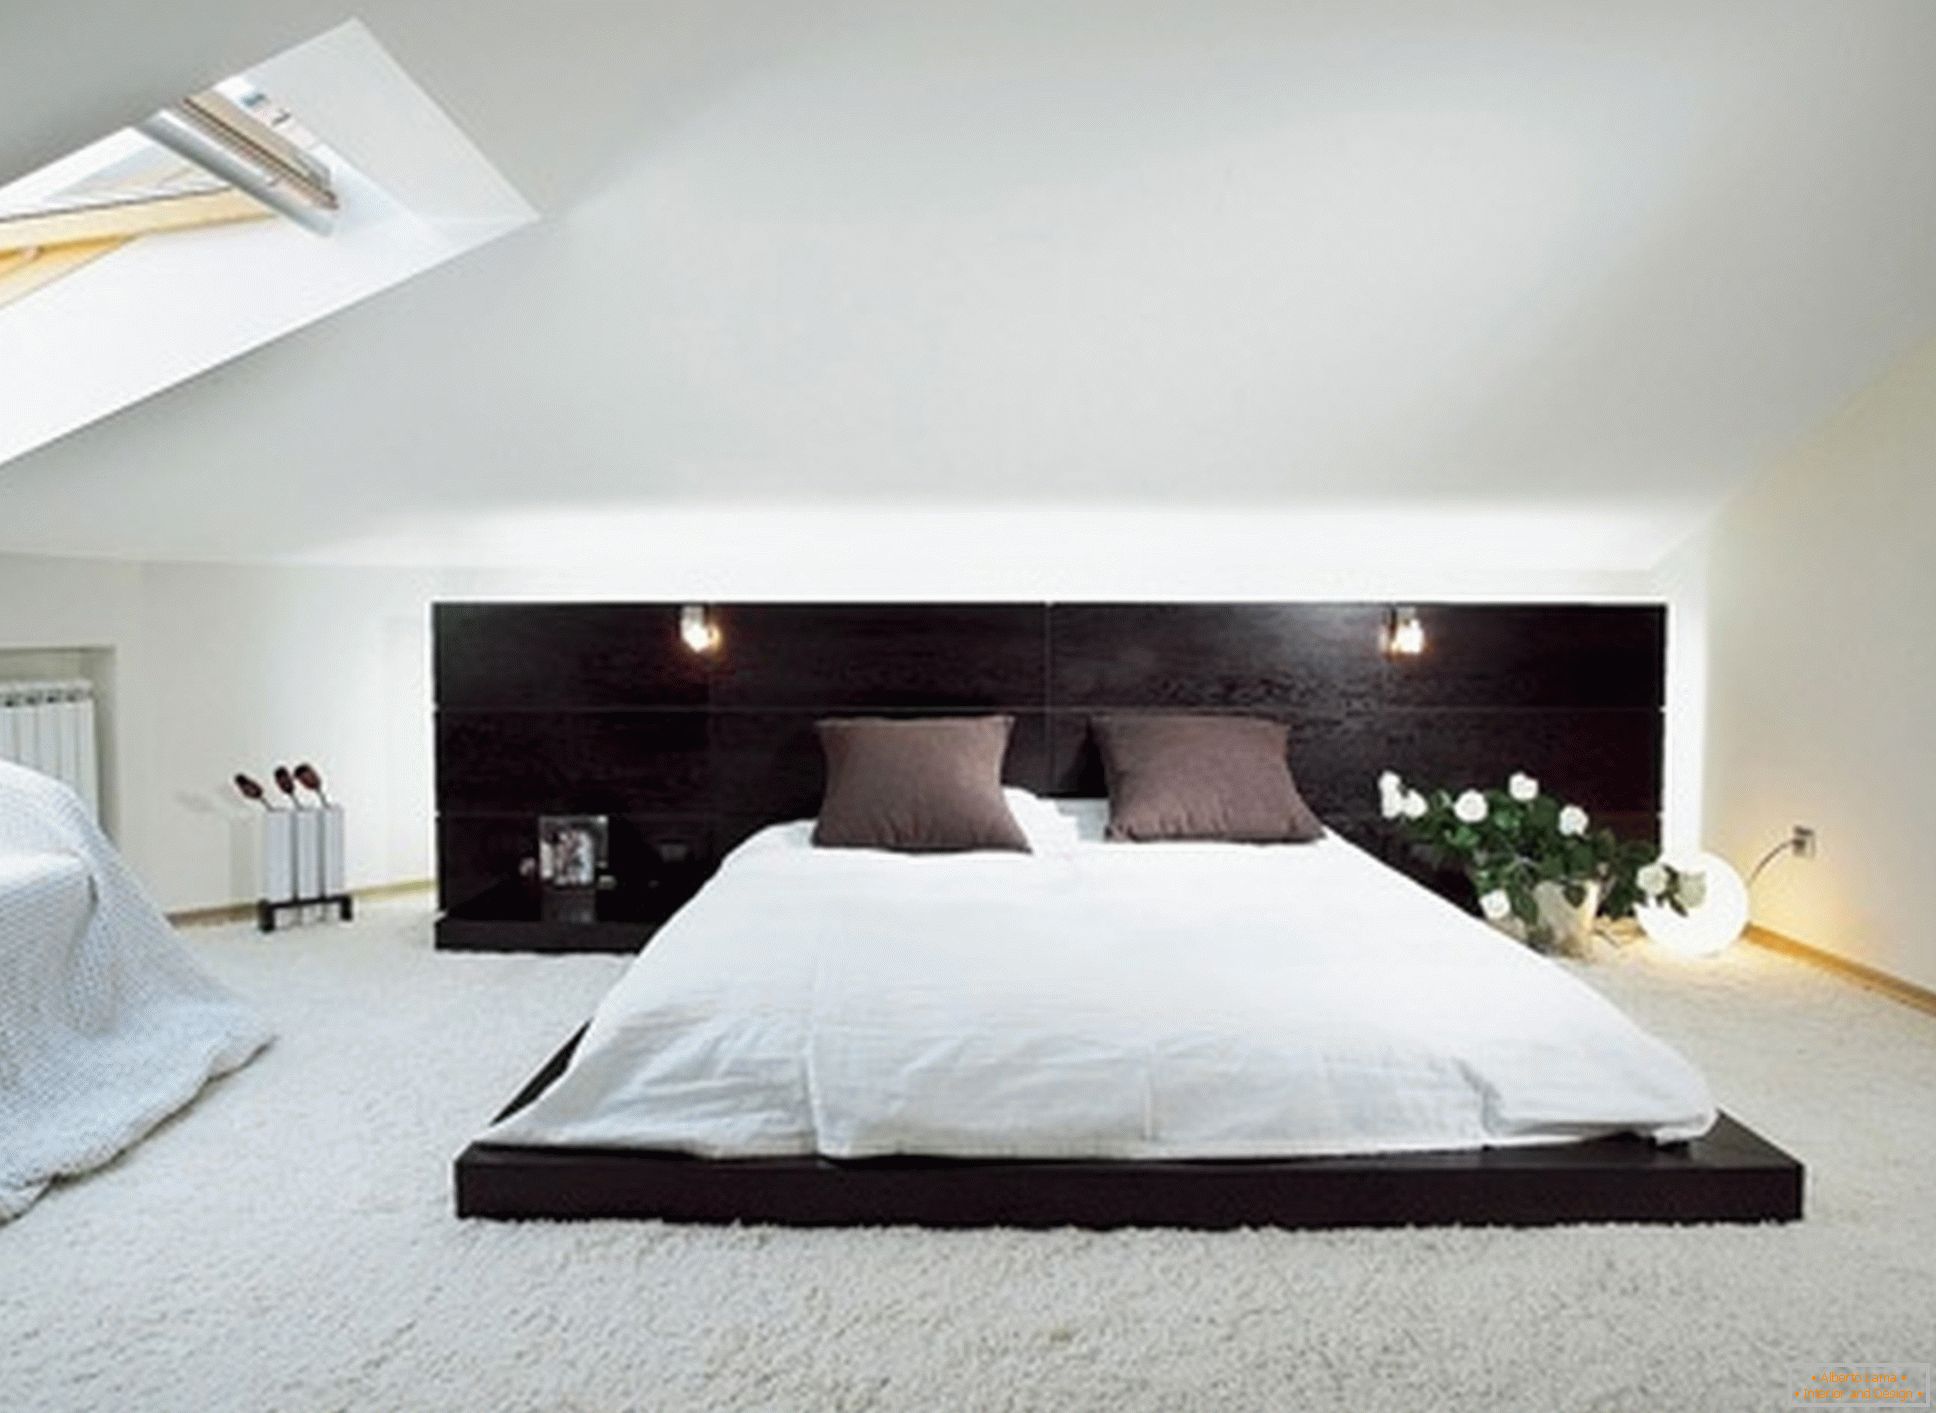 Lujosa habitación en el estilo del minimalismo: un ejemplo de diseño exitoso de una habitación pequeña en el piso del ático.